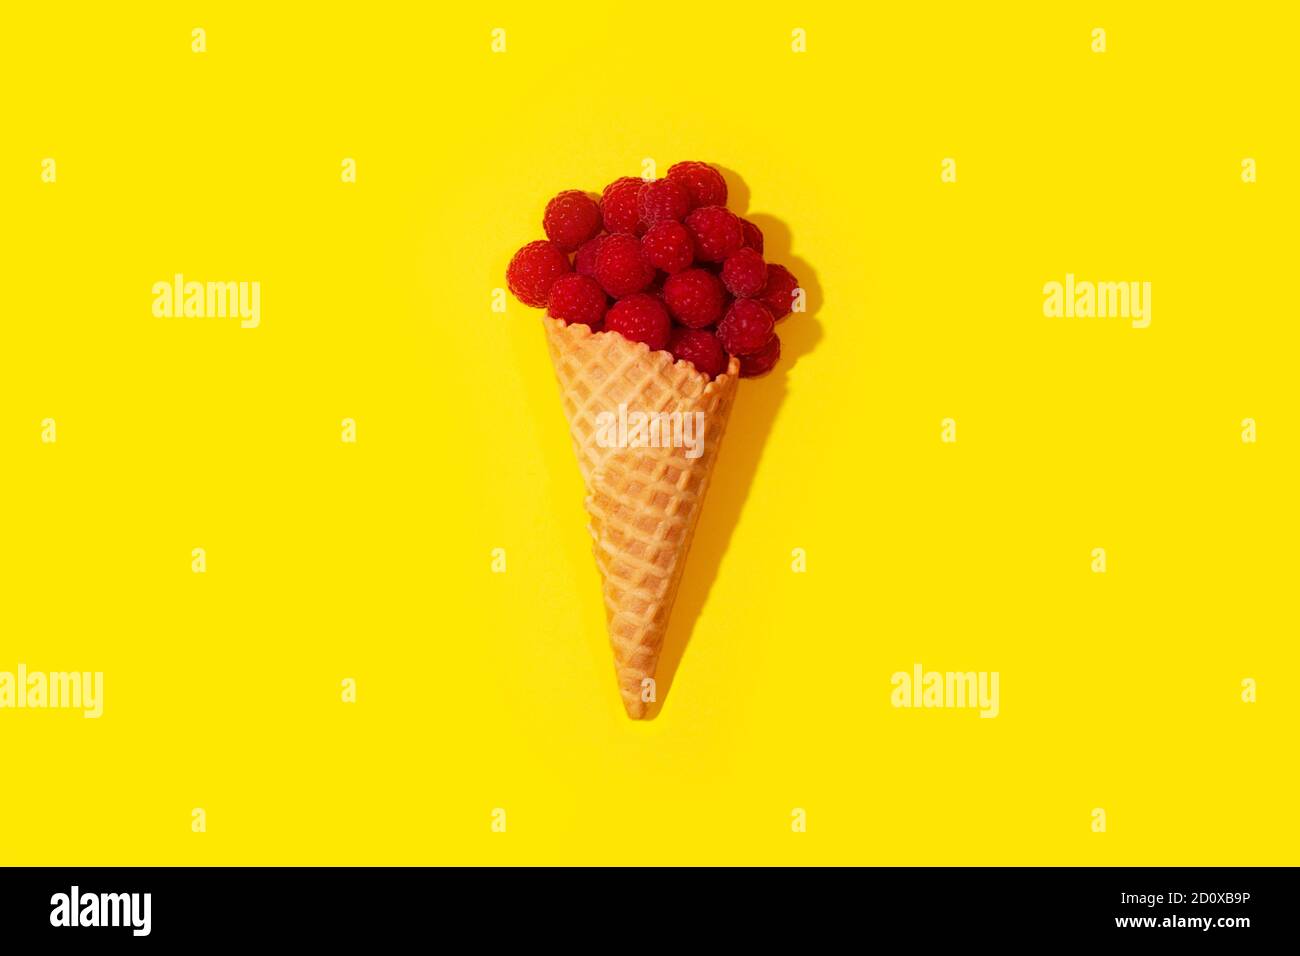 L'art conceptuel des framboises dans un cornet de crème glacée sur une table, sur un fond jaune. Peu de surréalisme. Banque D'Images